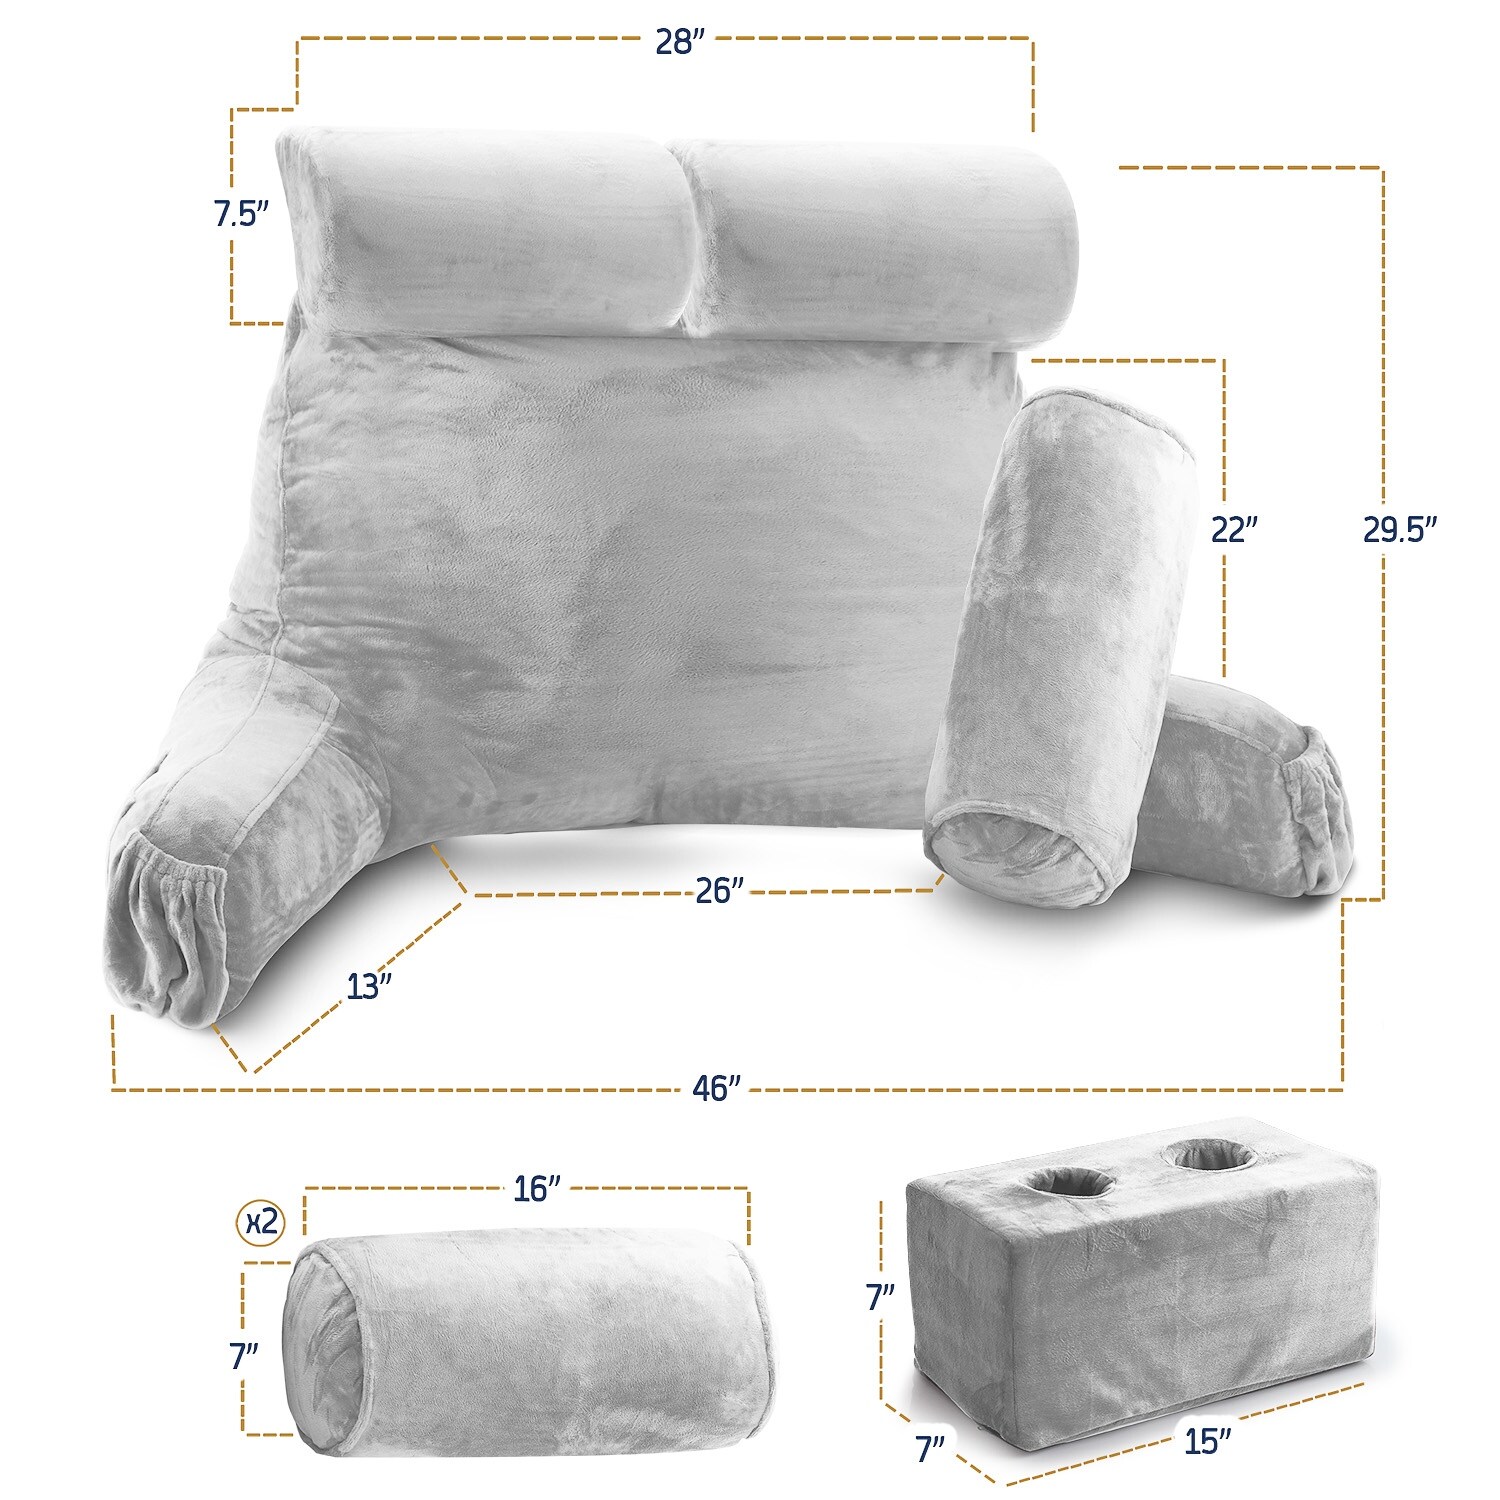 Nestl Shredded Memory Foam Reading Backrest Pillow, Petite - Black